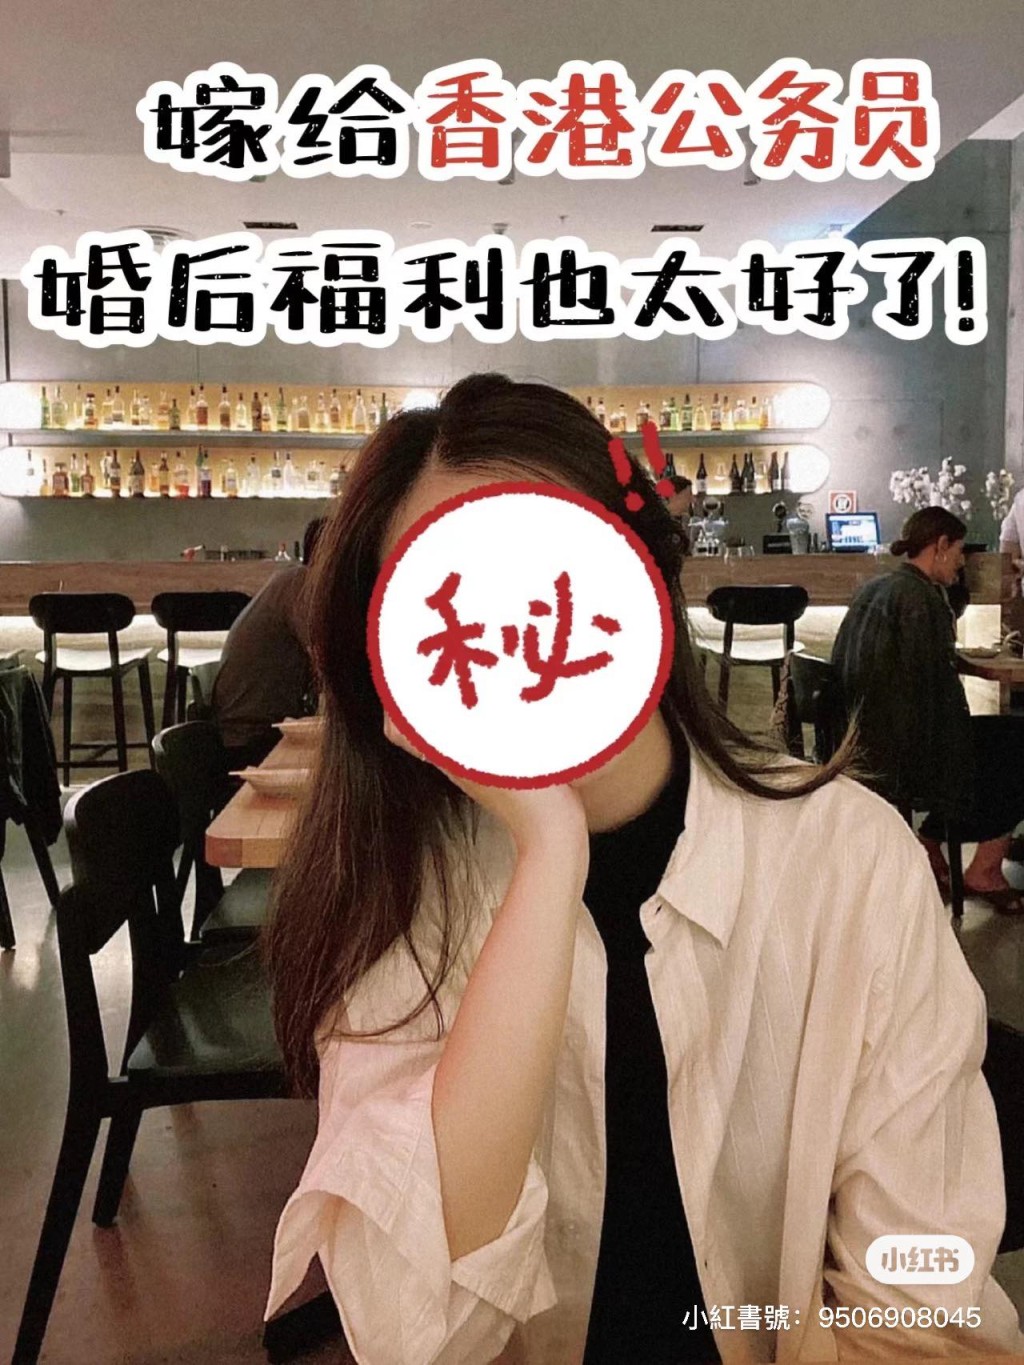 有婚姻配對公司在小紅書分享一名33歲江蘇女生的故事。小紅書圖片